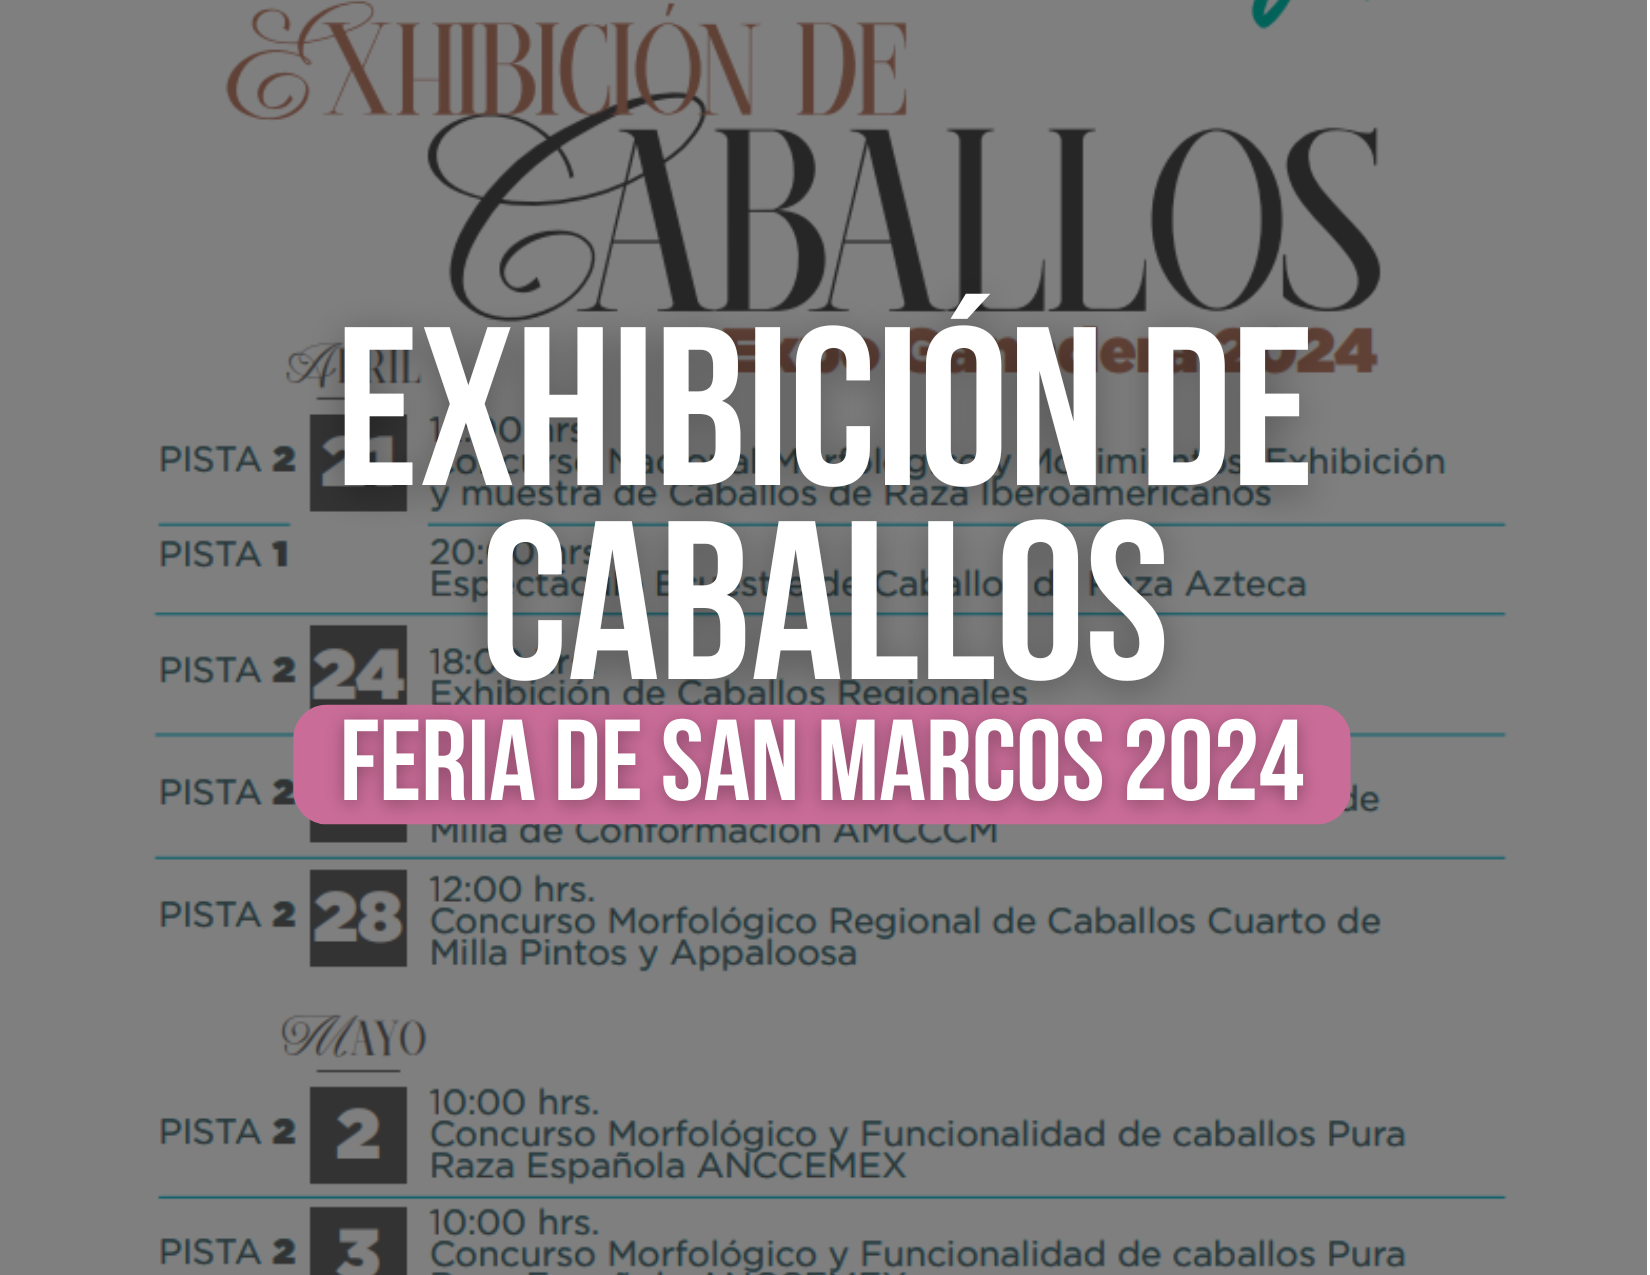 Exhibición de Caballos Feria de San Marcos 2024